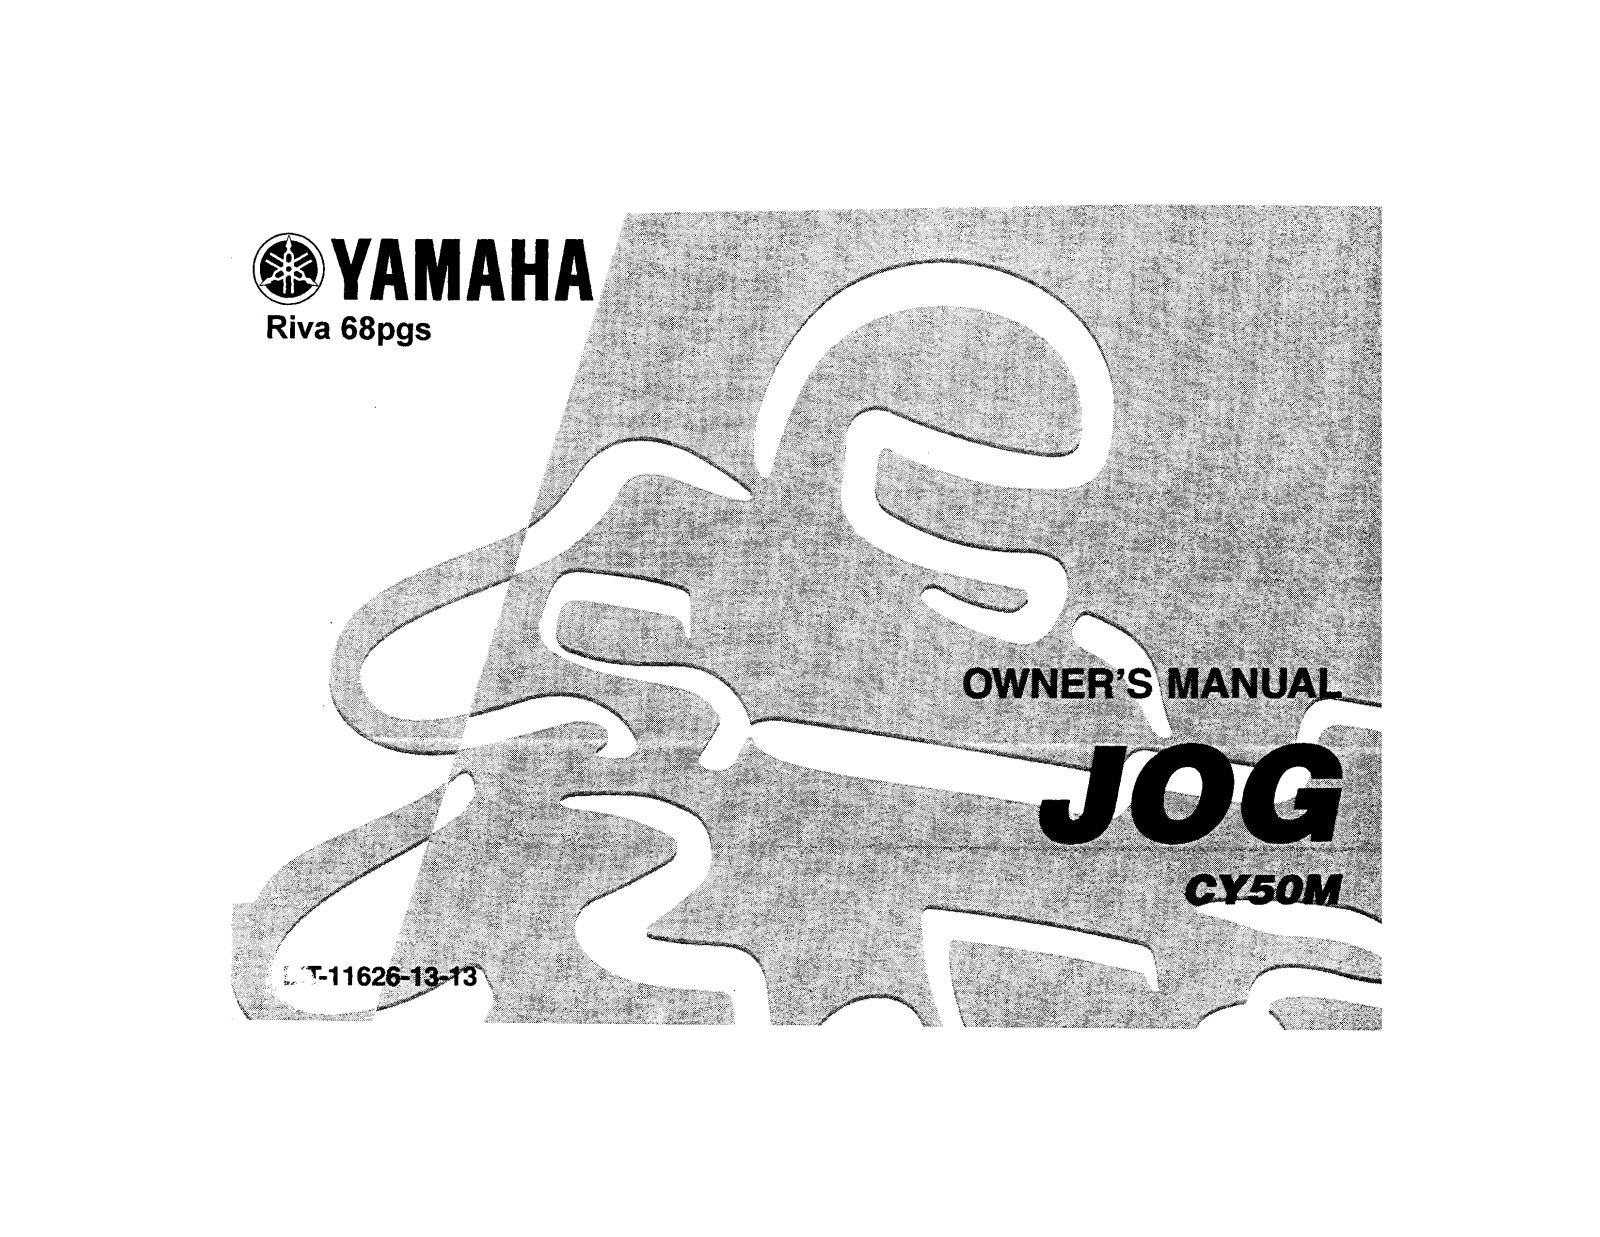 Yamaha JOG CY50M Manual